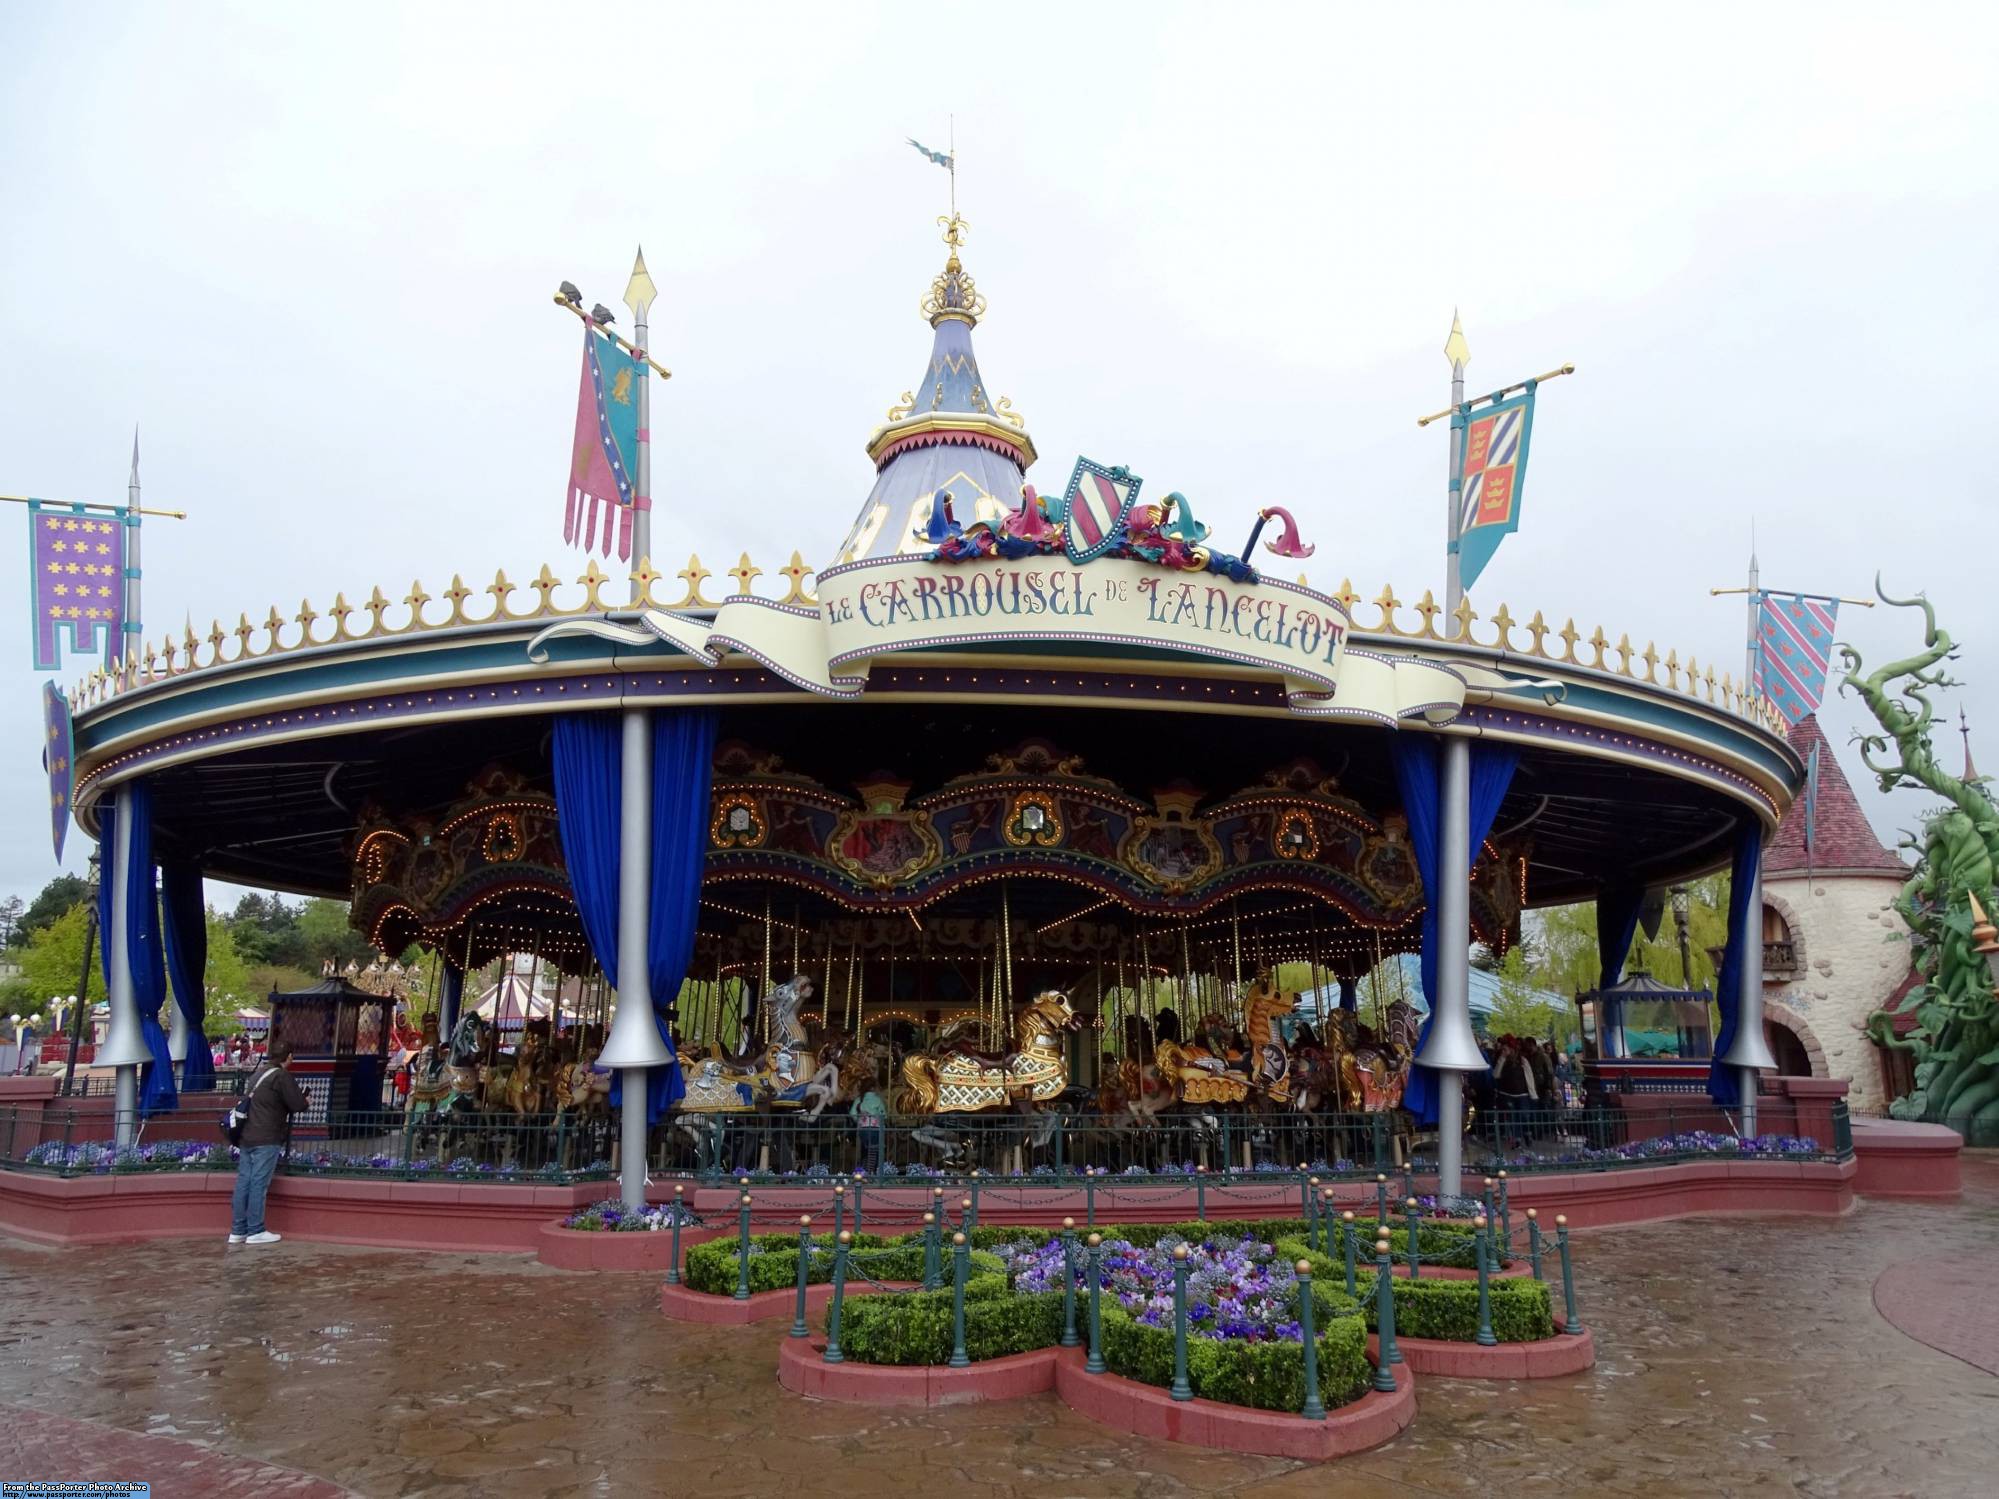 Disneyland Paris - Le Carrousel de Lancelot